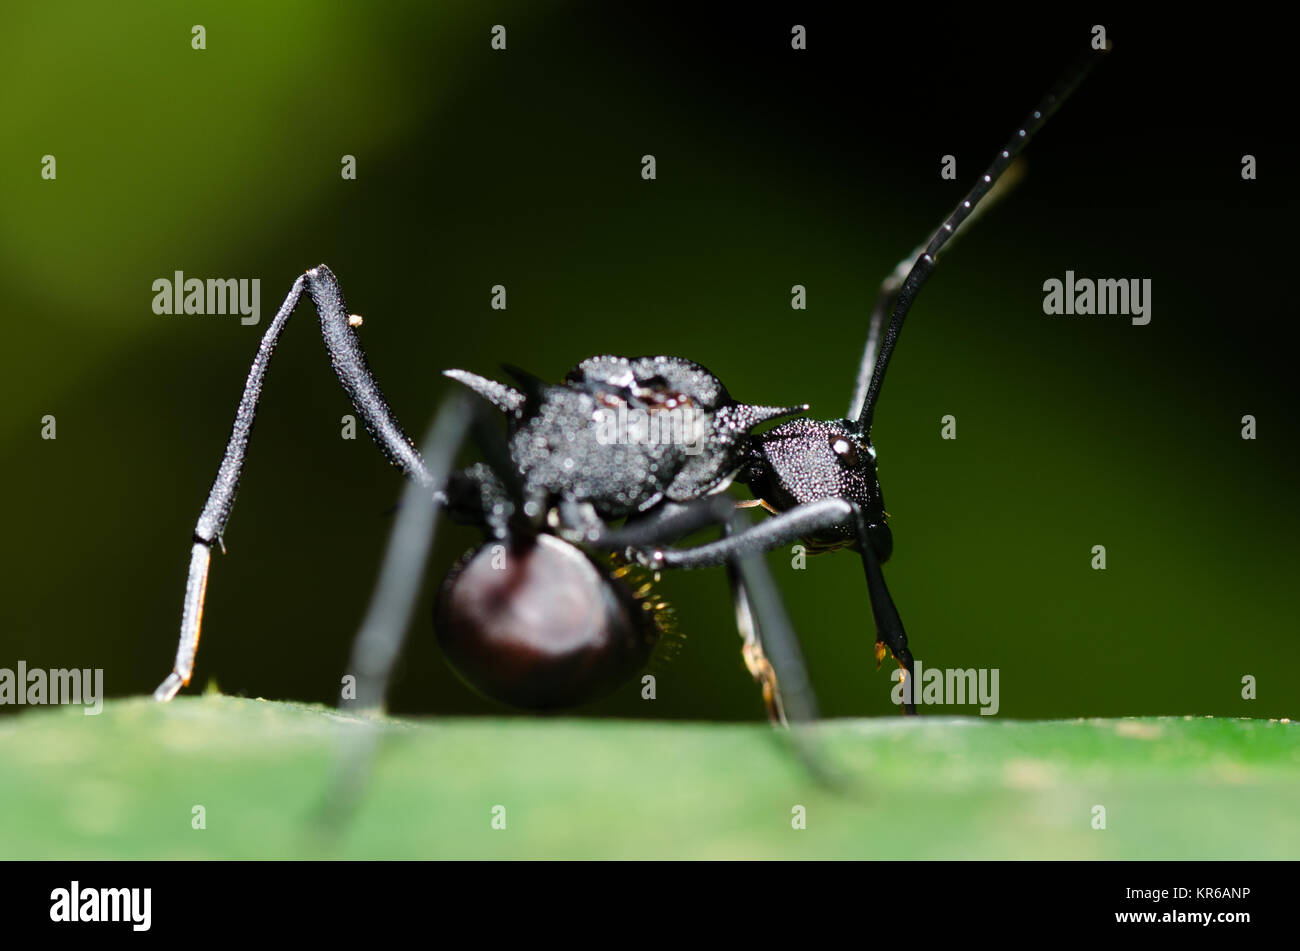 Nahaufnahme der Schwarze Garten ant (Lasius Niger) auf ein Blatt in die Kamera schaut Stockfoto